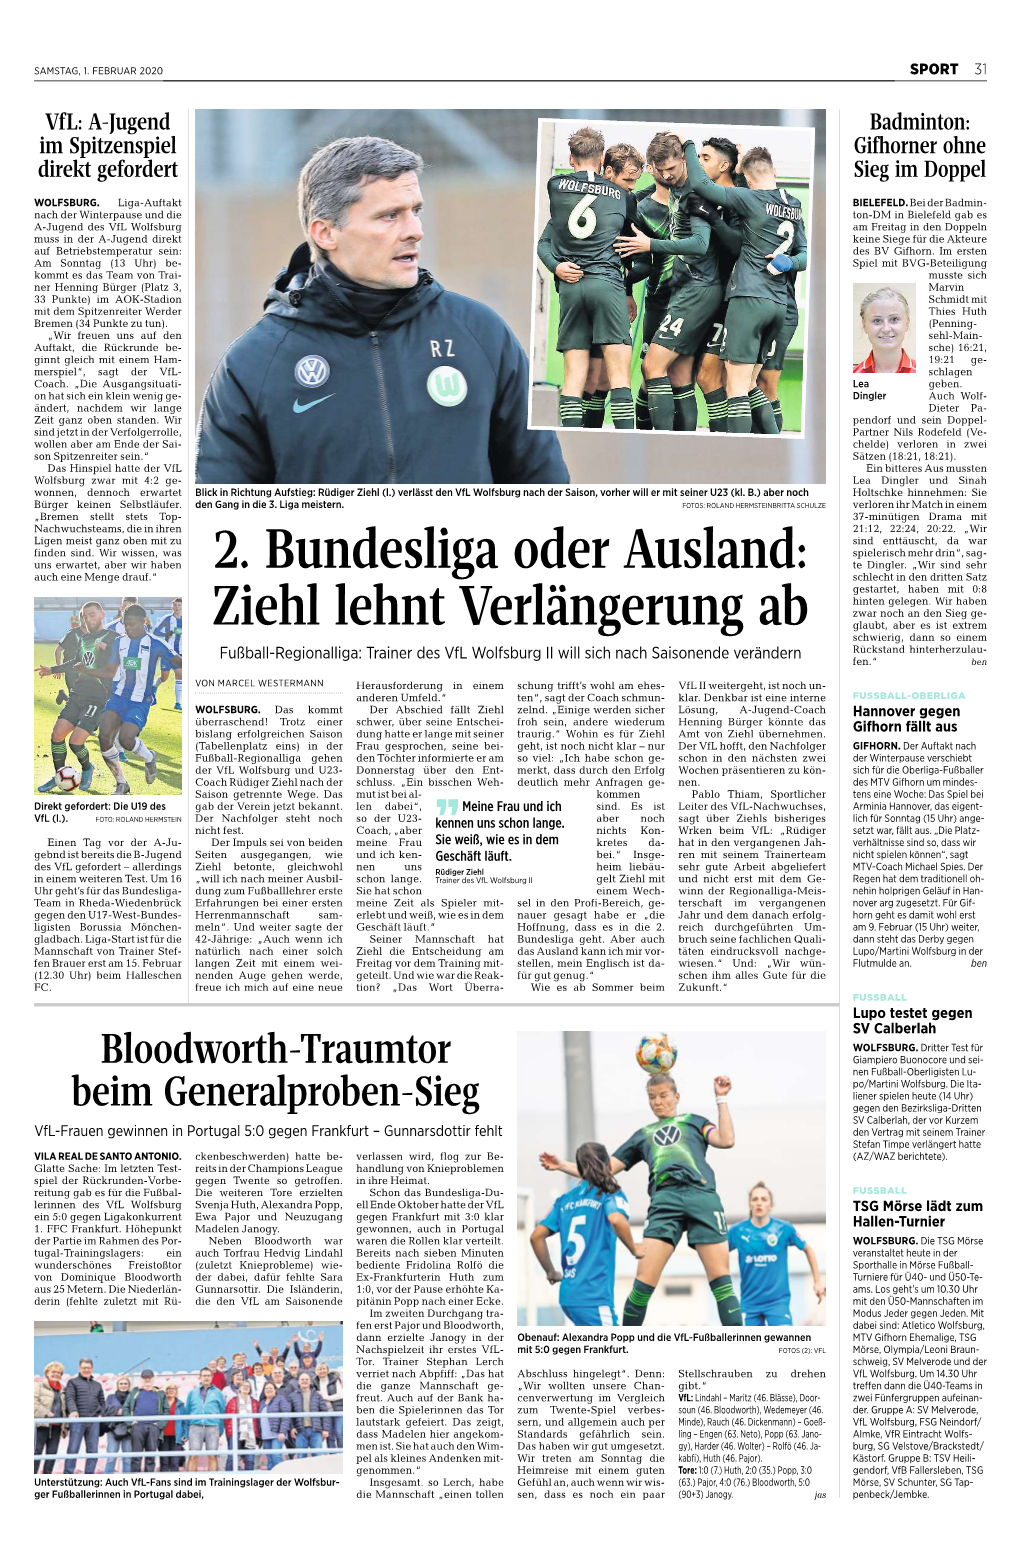 2. Bundesliga Oder Ausland: Ziehl Lehnt Verlängerung Ab